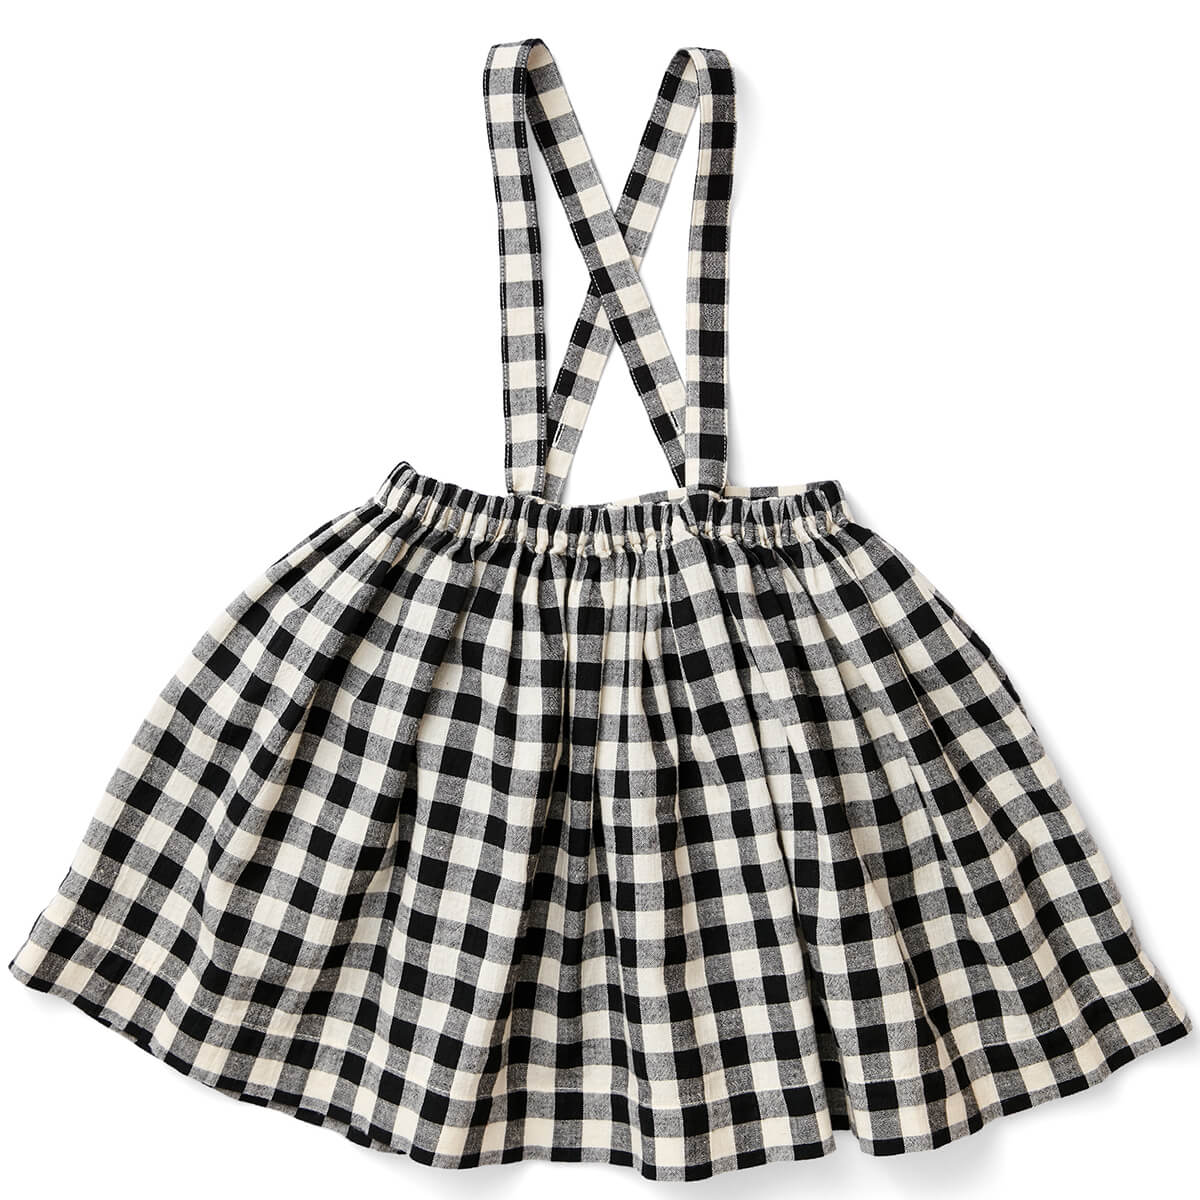 Mavis Skirt in Gingham by Soor Ploom - Last Ones In Stock - 7-8 ...